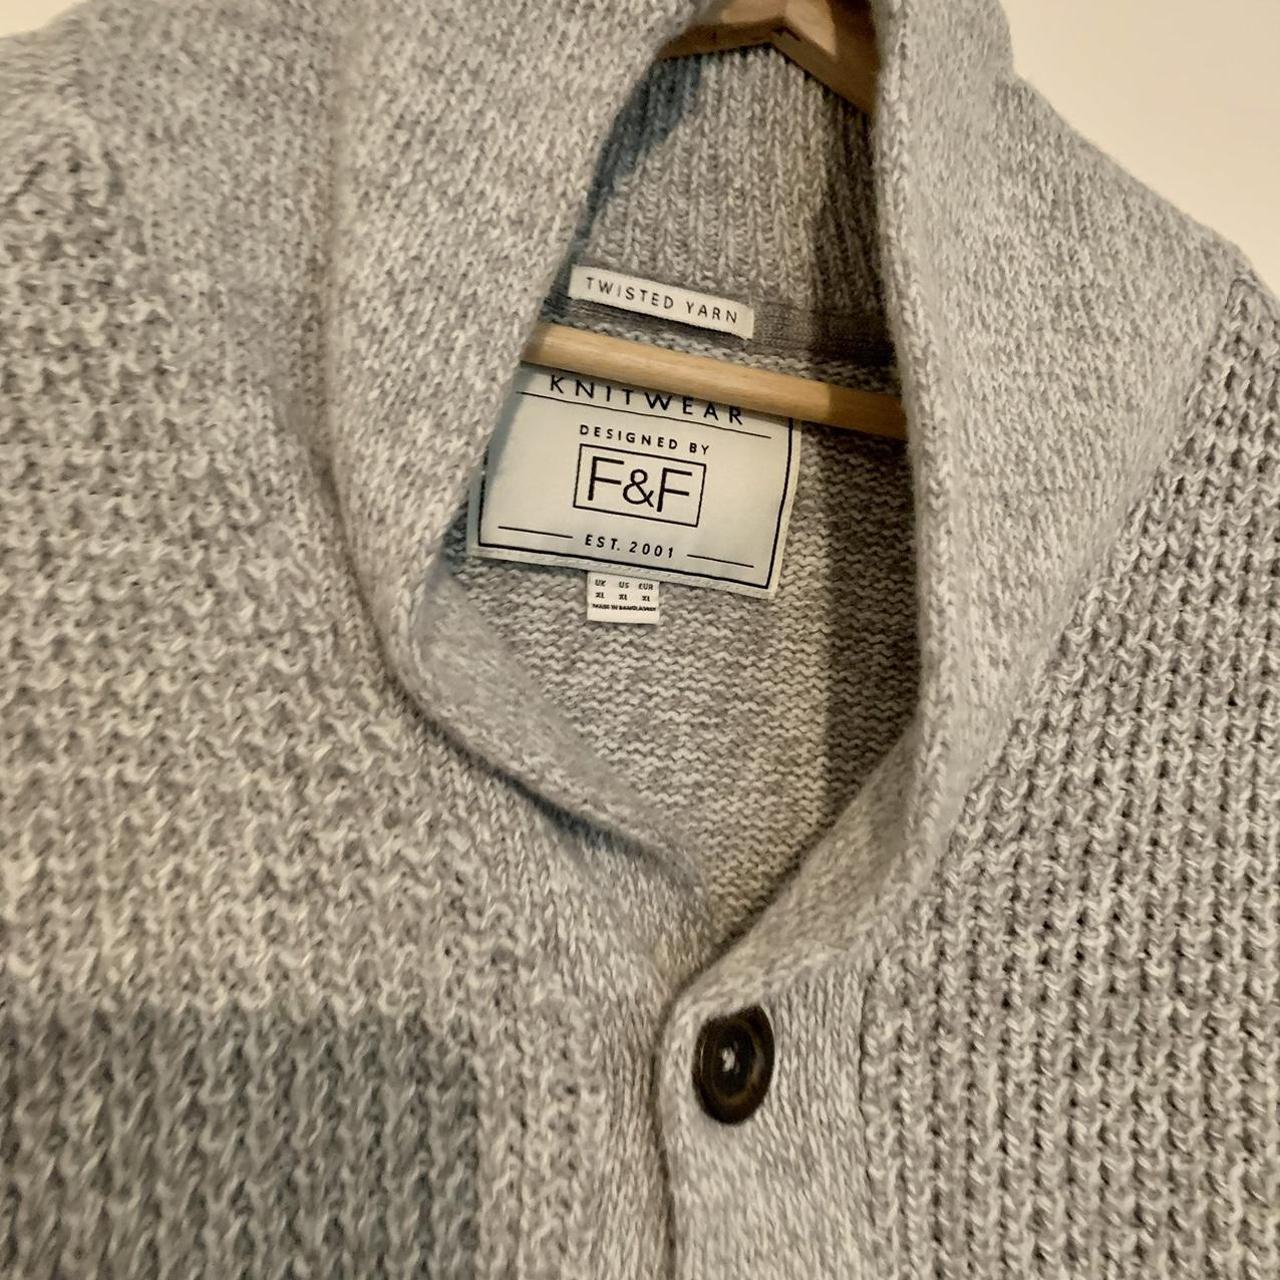 Warm F&F Men's Heavy Knit Wear Cardigan Size XL... - Depop